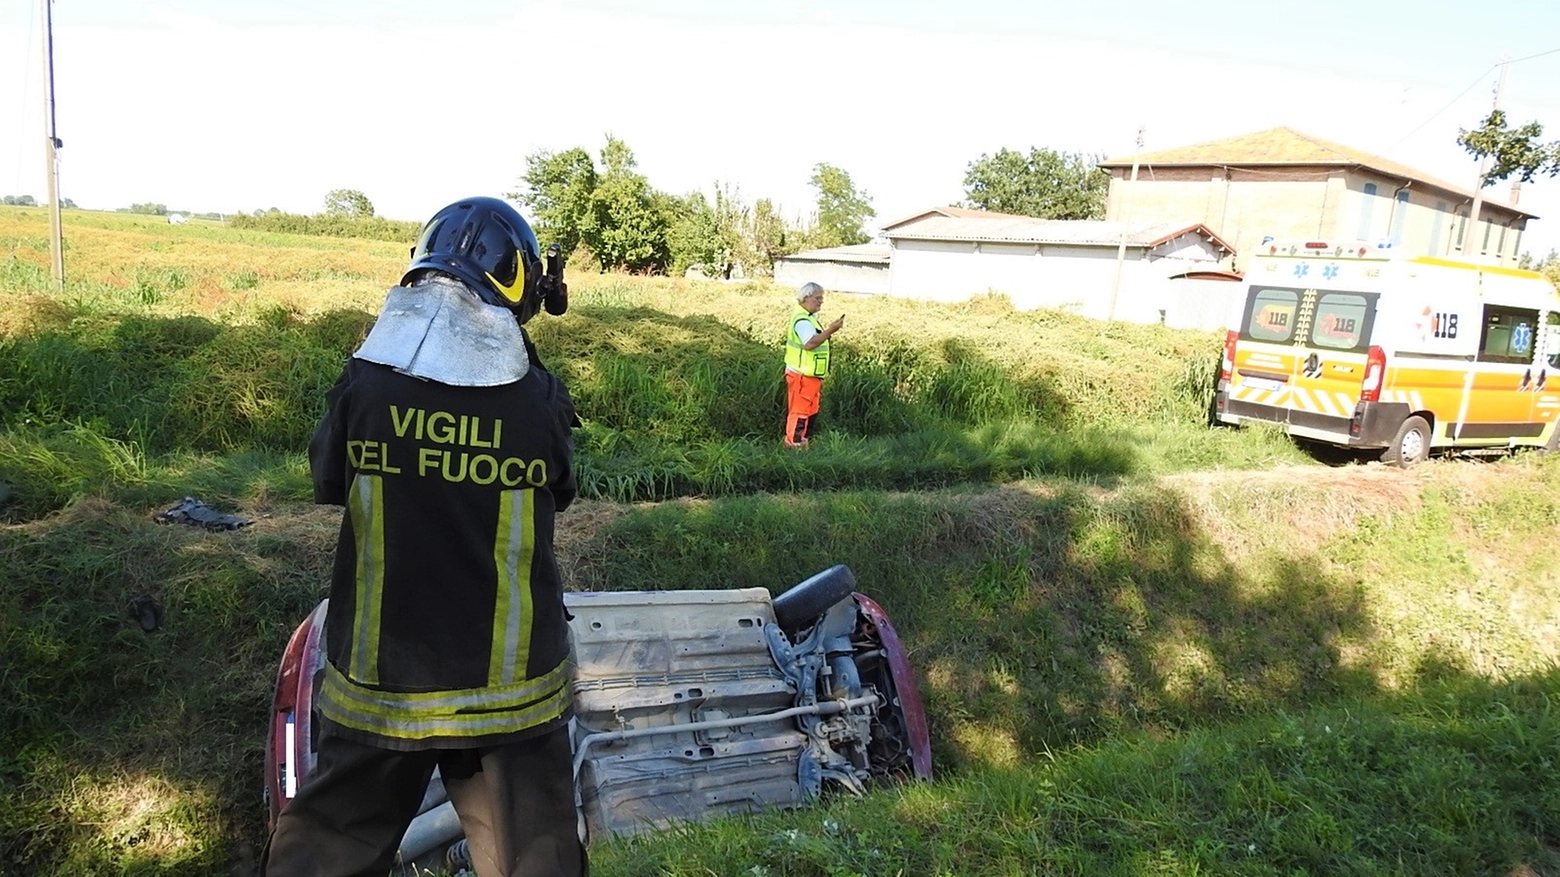 L'incidente è avvenuto nelle campagne intorno a Fusignano (Scardovi)